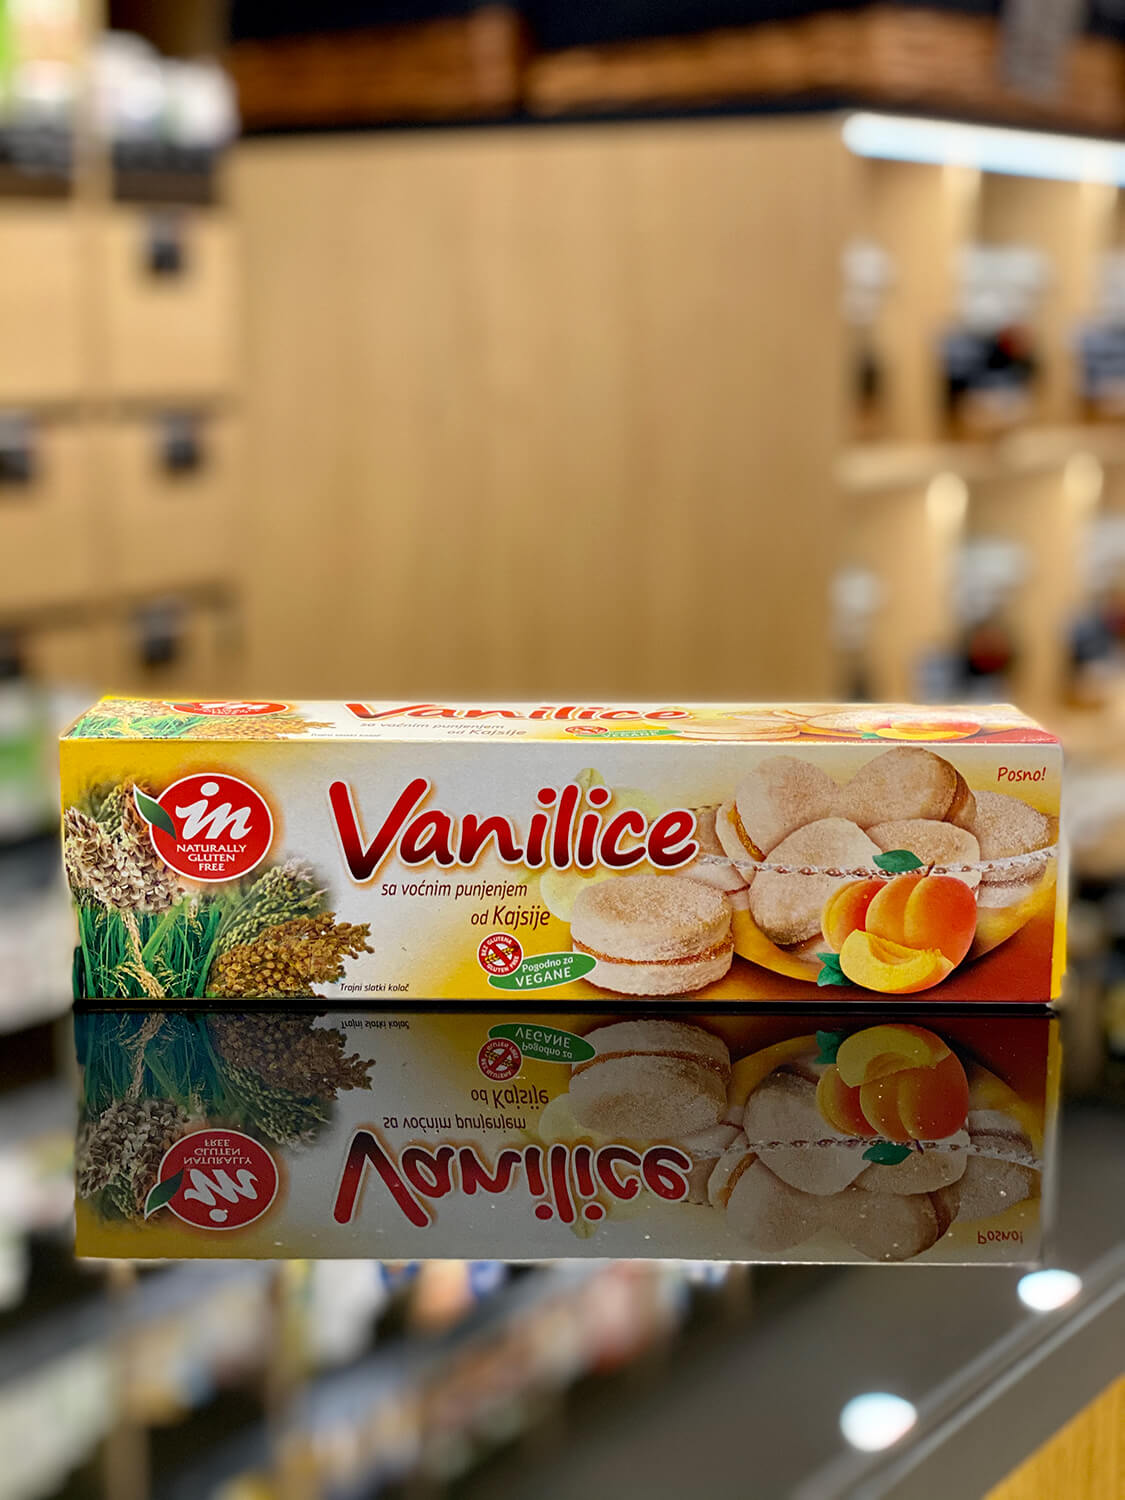 Vanilice sa voćnim punjenjem od kajsije